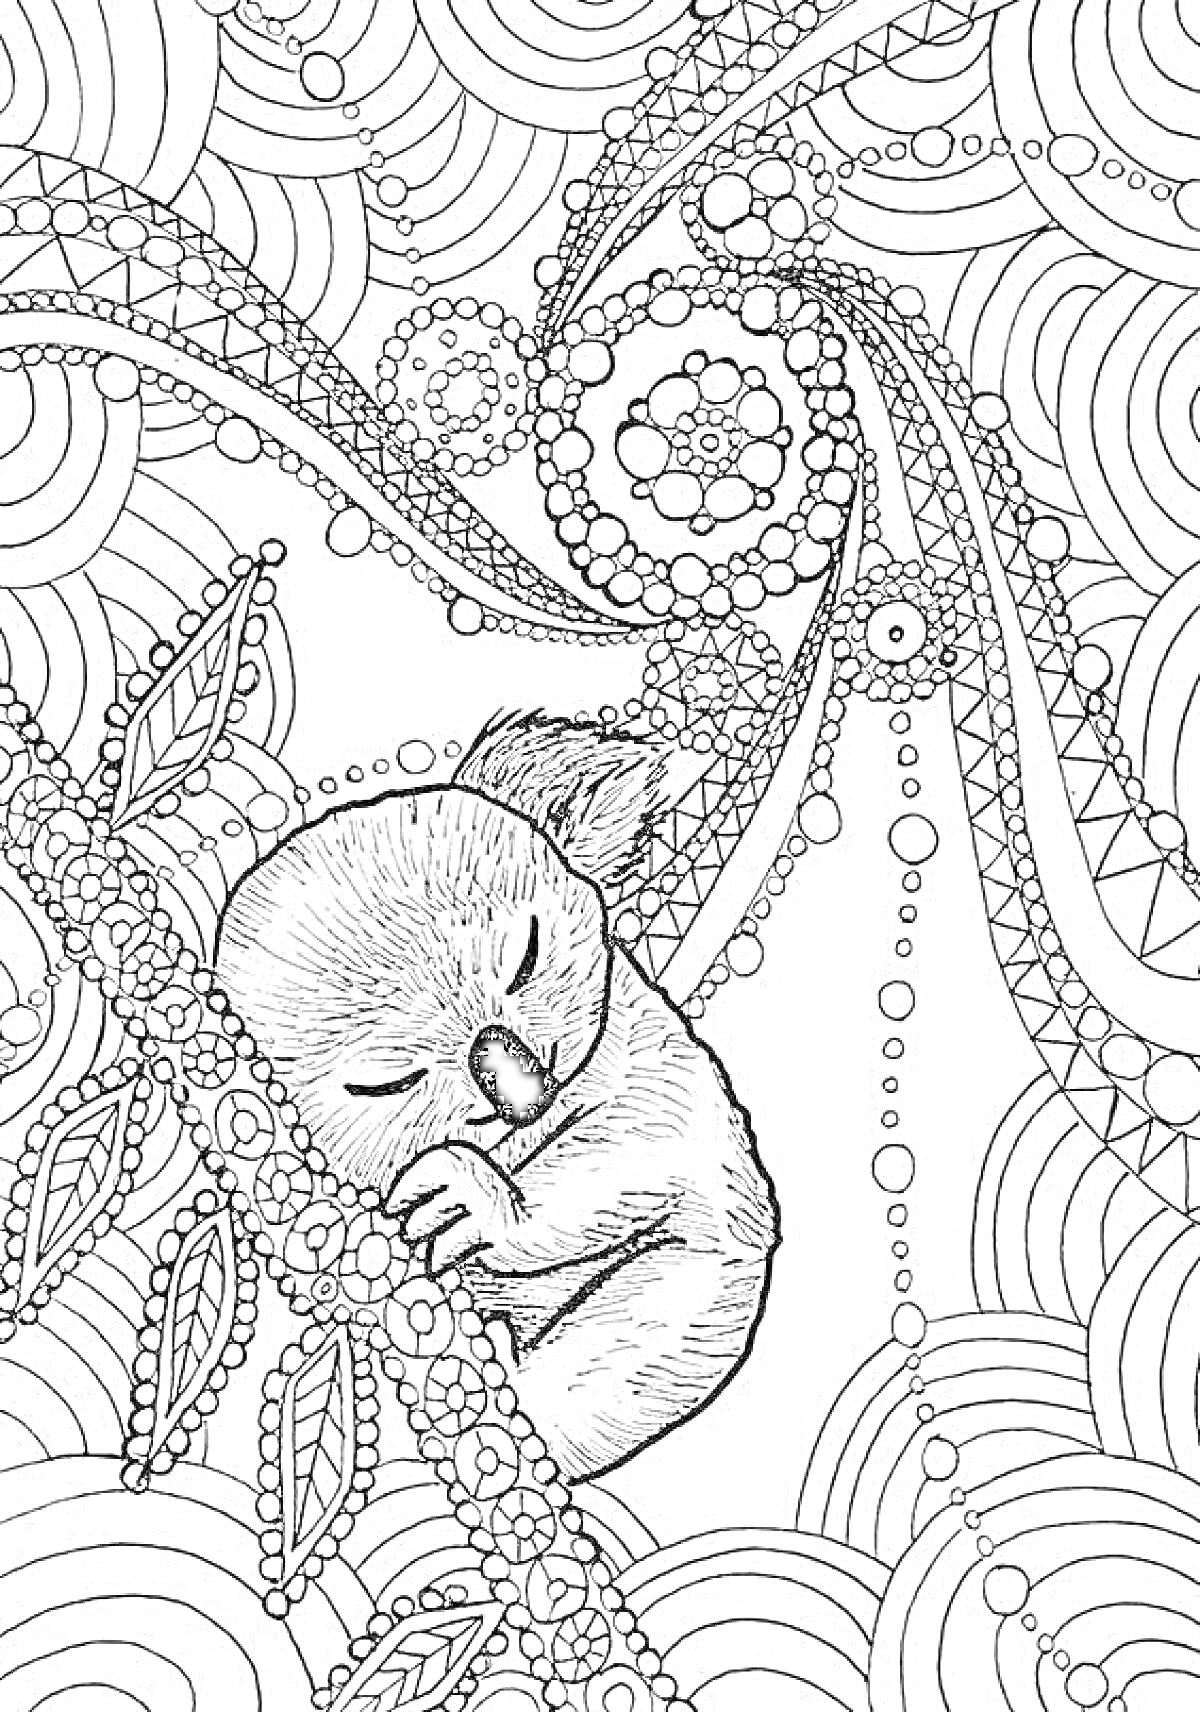 Раскраска Спящий коала на ветке с листвой на фоне абстрактного узора с кругами и линиями